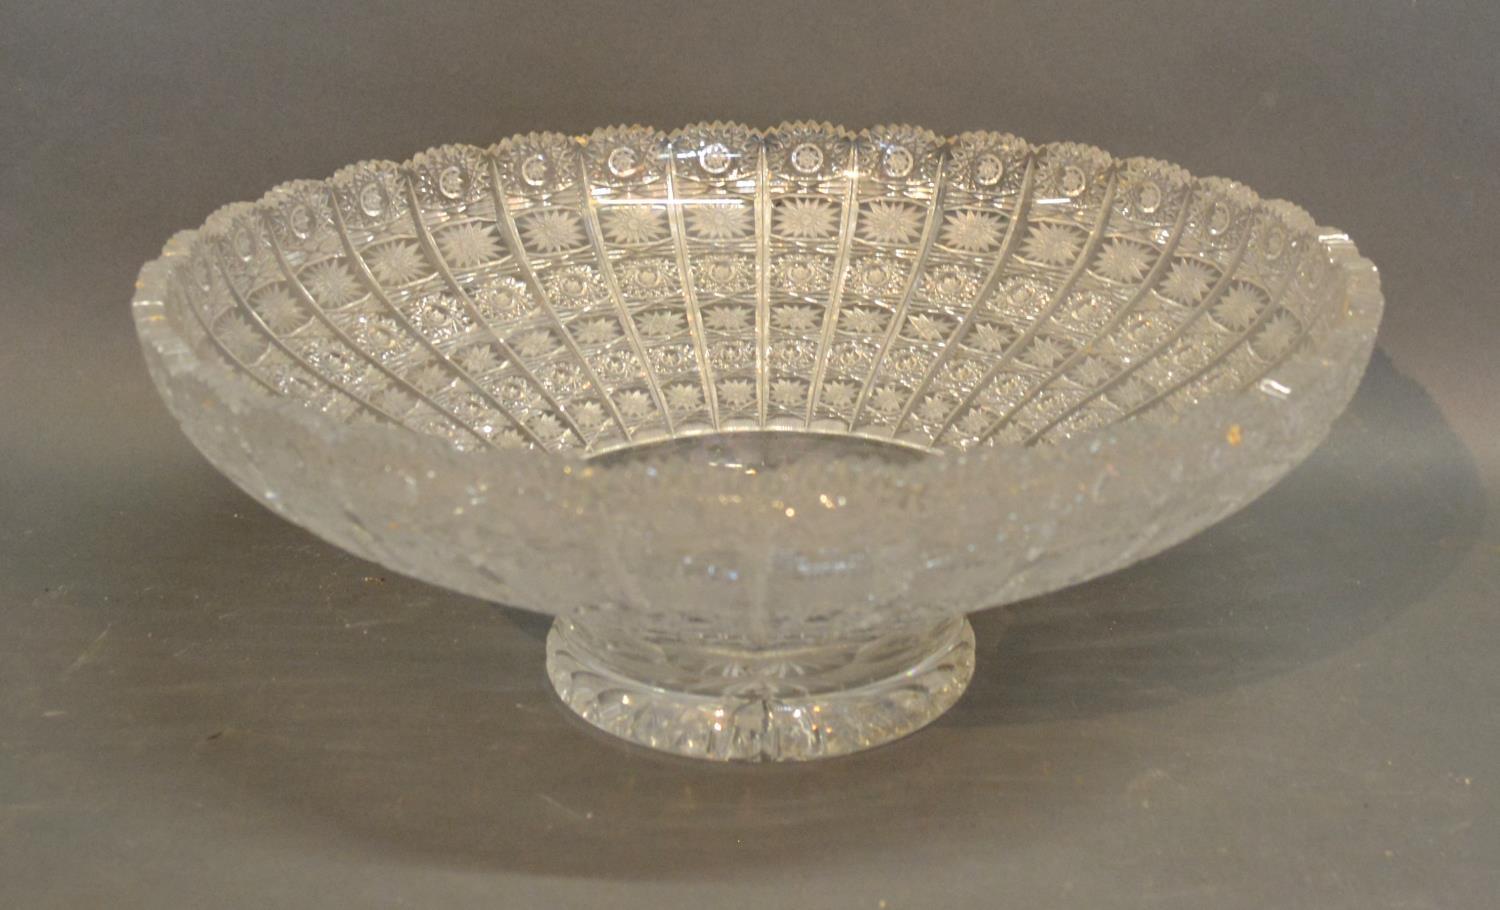 A Large Cut Glass Bowl, 41cm Diameter